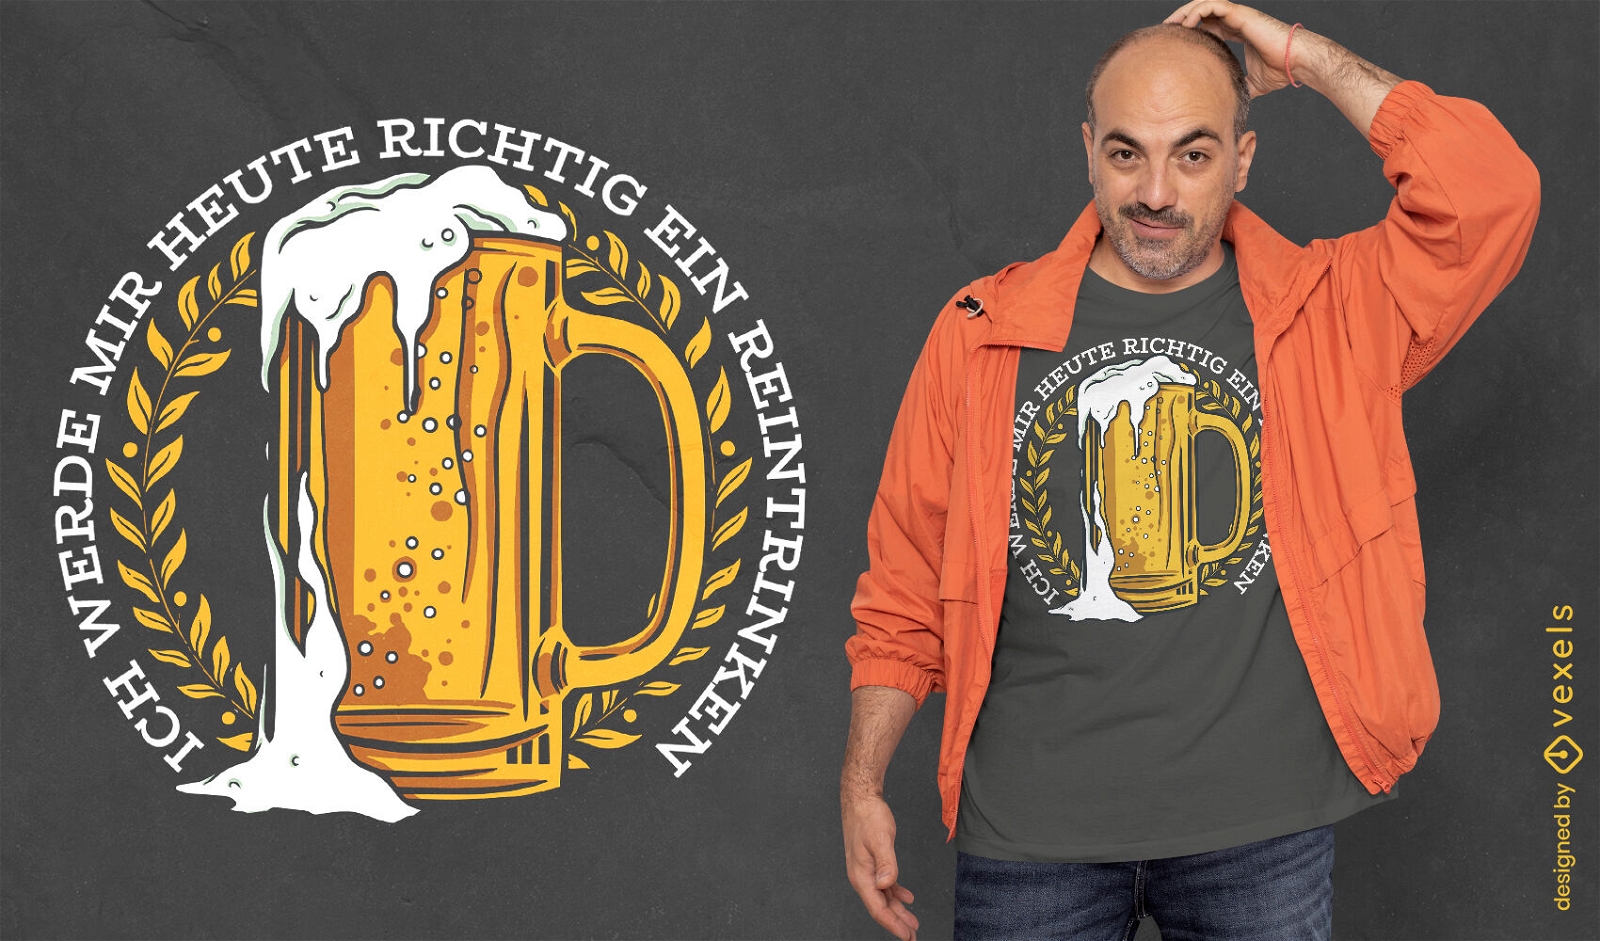 Deutsches Bier alkoholisches Getr?nk T-Shirt Design